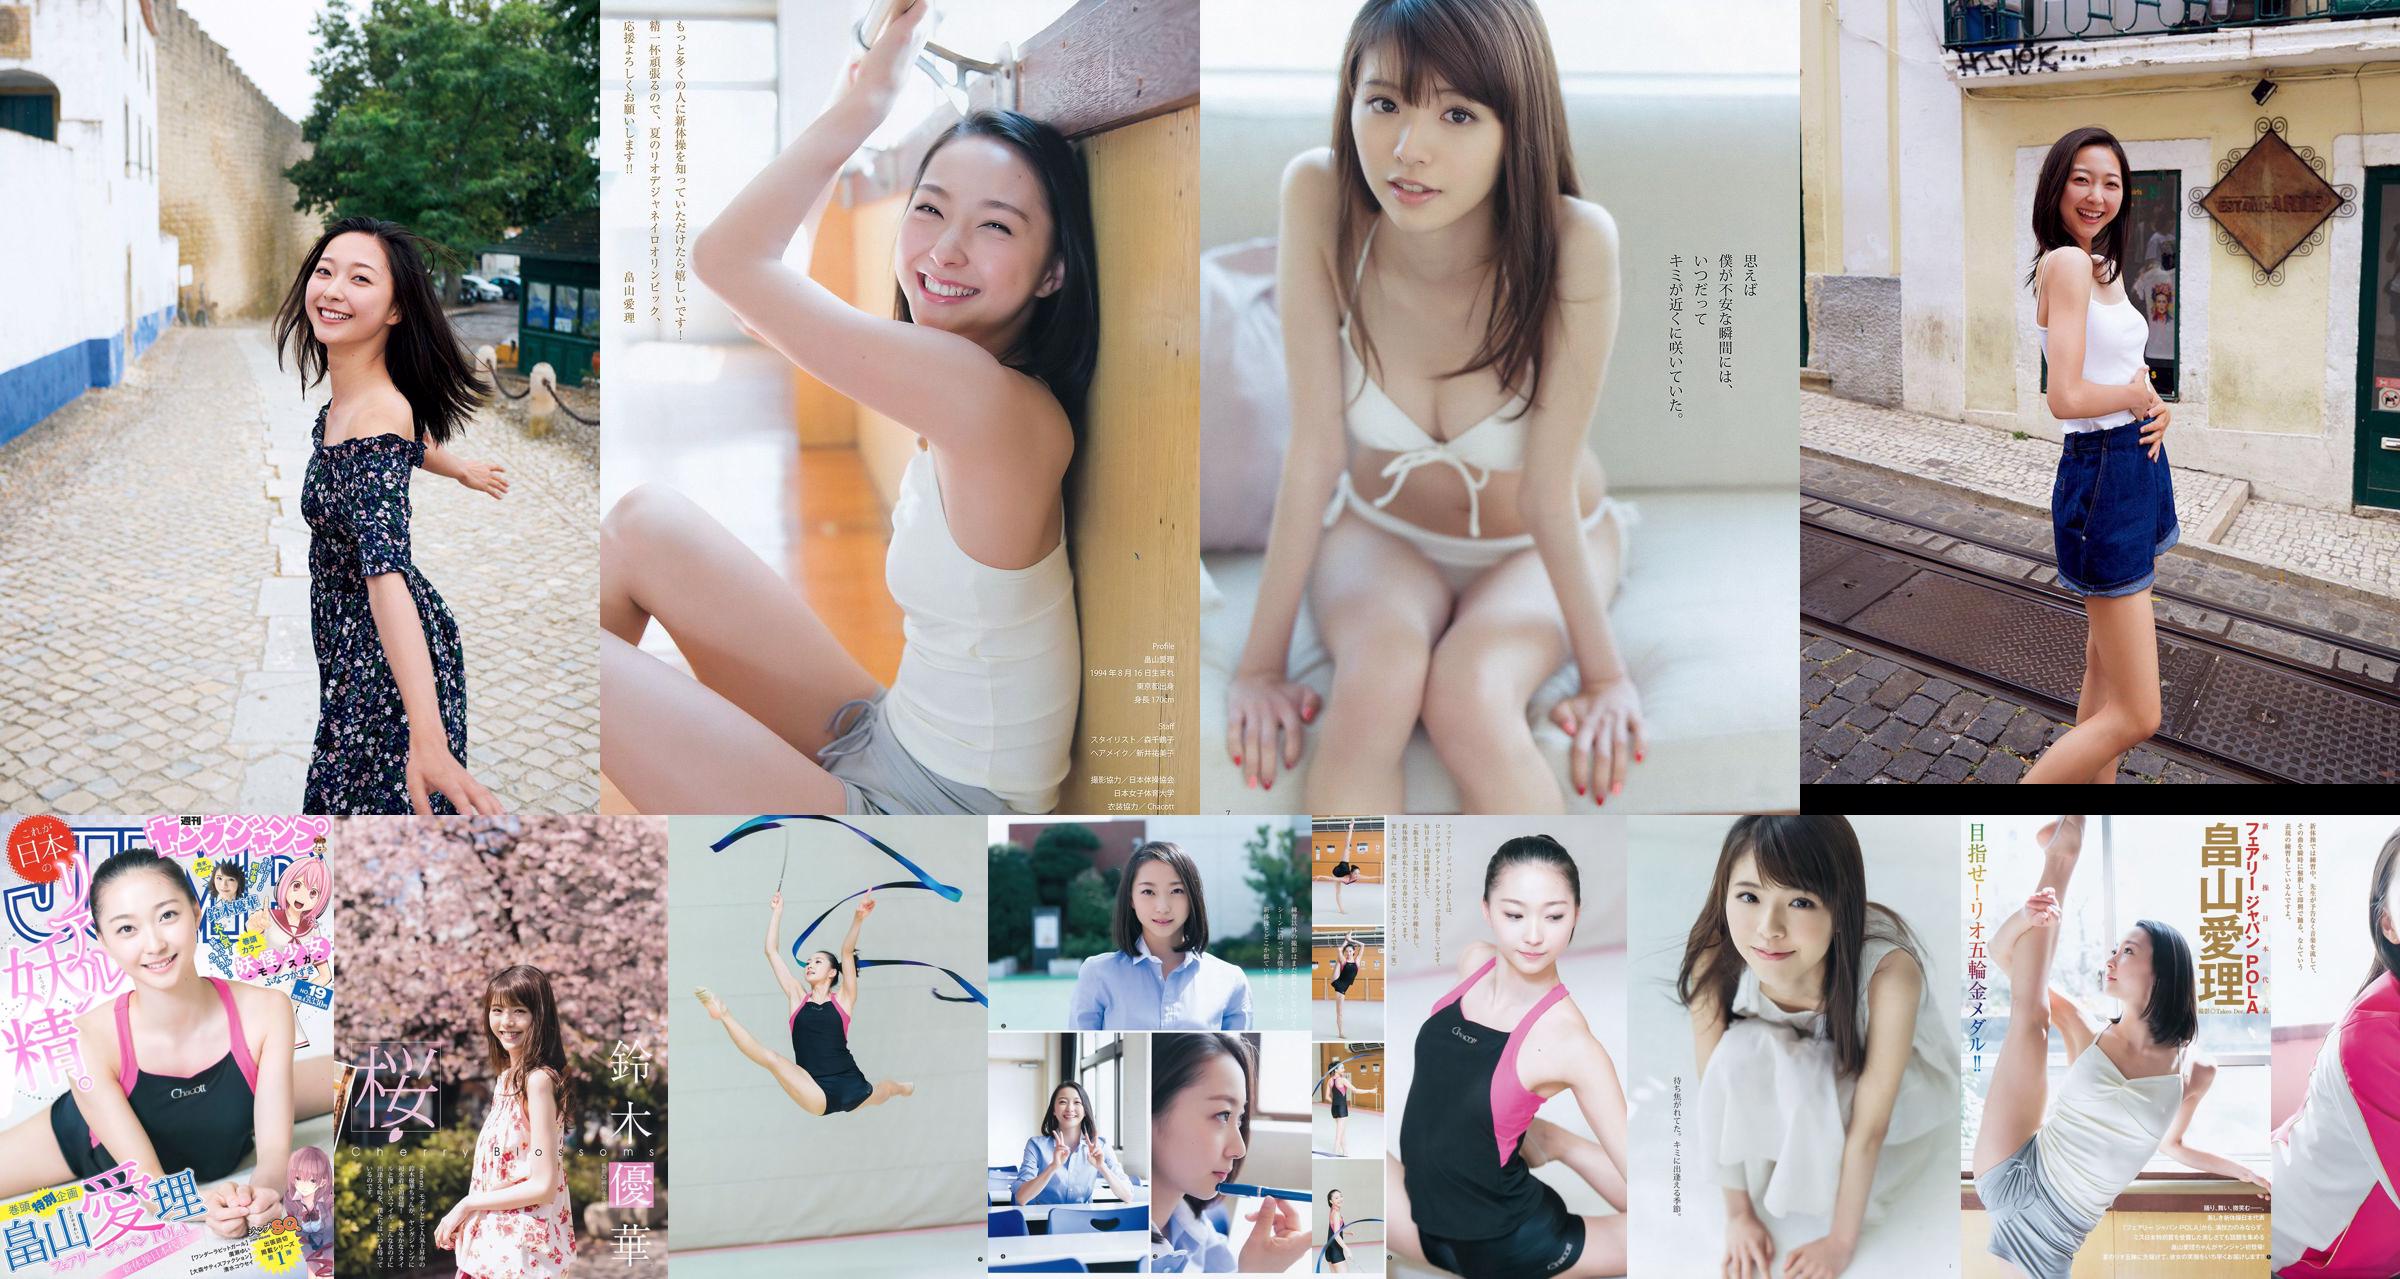 [ENTAME] Mai Shiraishi Nanase Nishino Rena Shimada Yui Takano Numéro de mars 2014 Photographie No.410dee Page 2